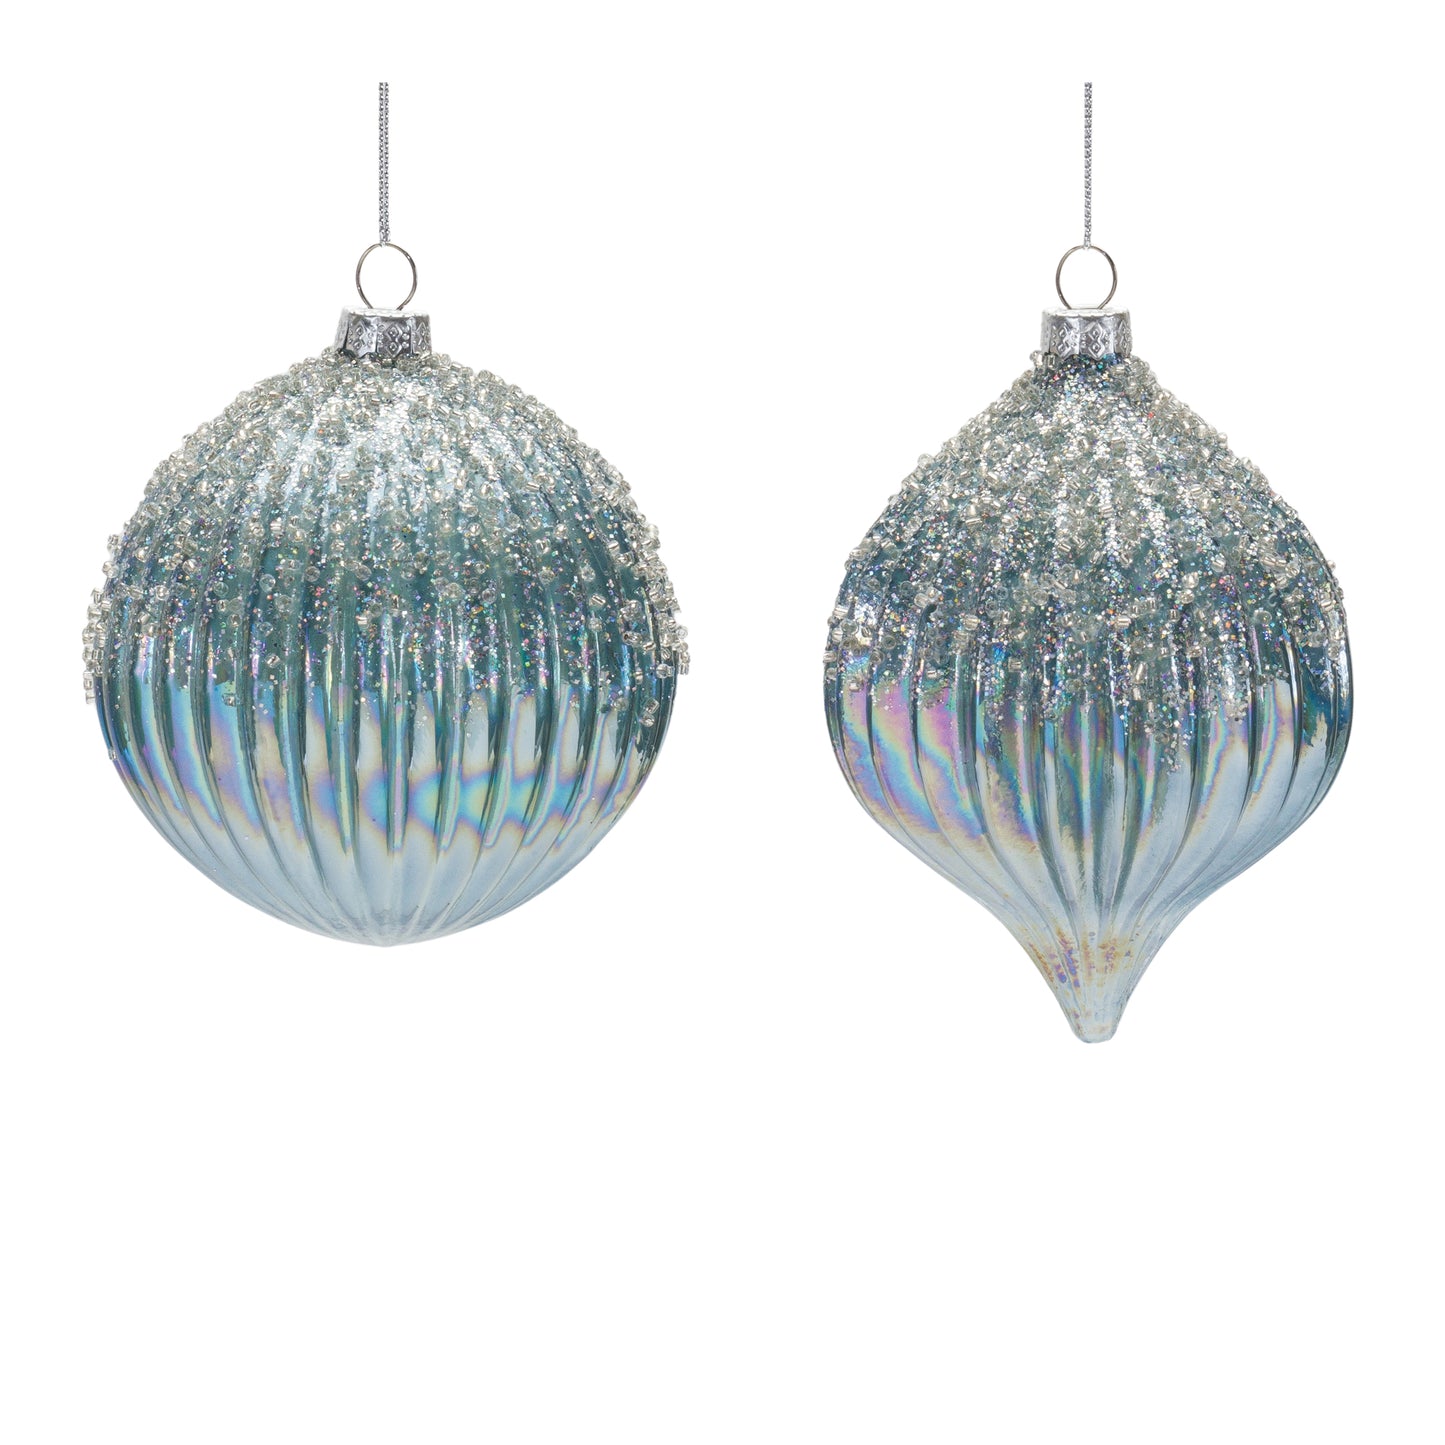 4.75"H or 5.5"H Silver Illumination Glass Ornament